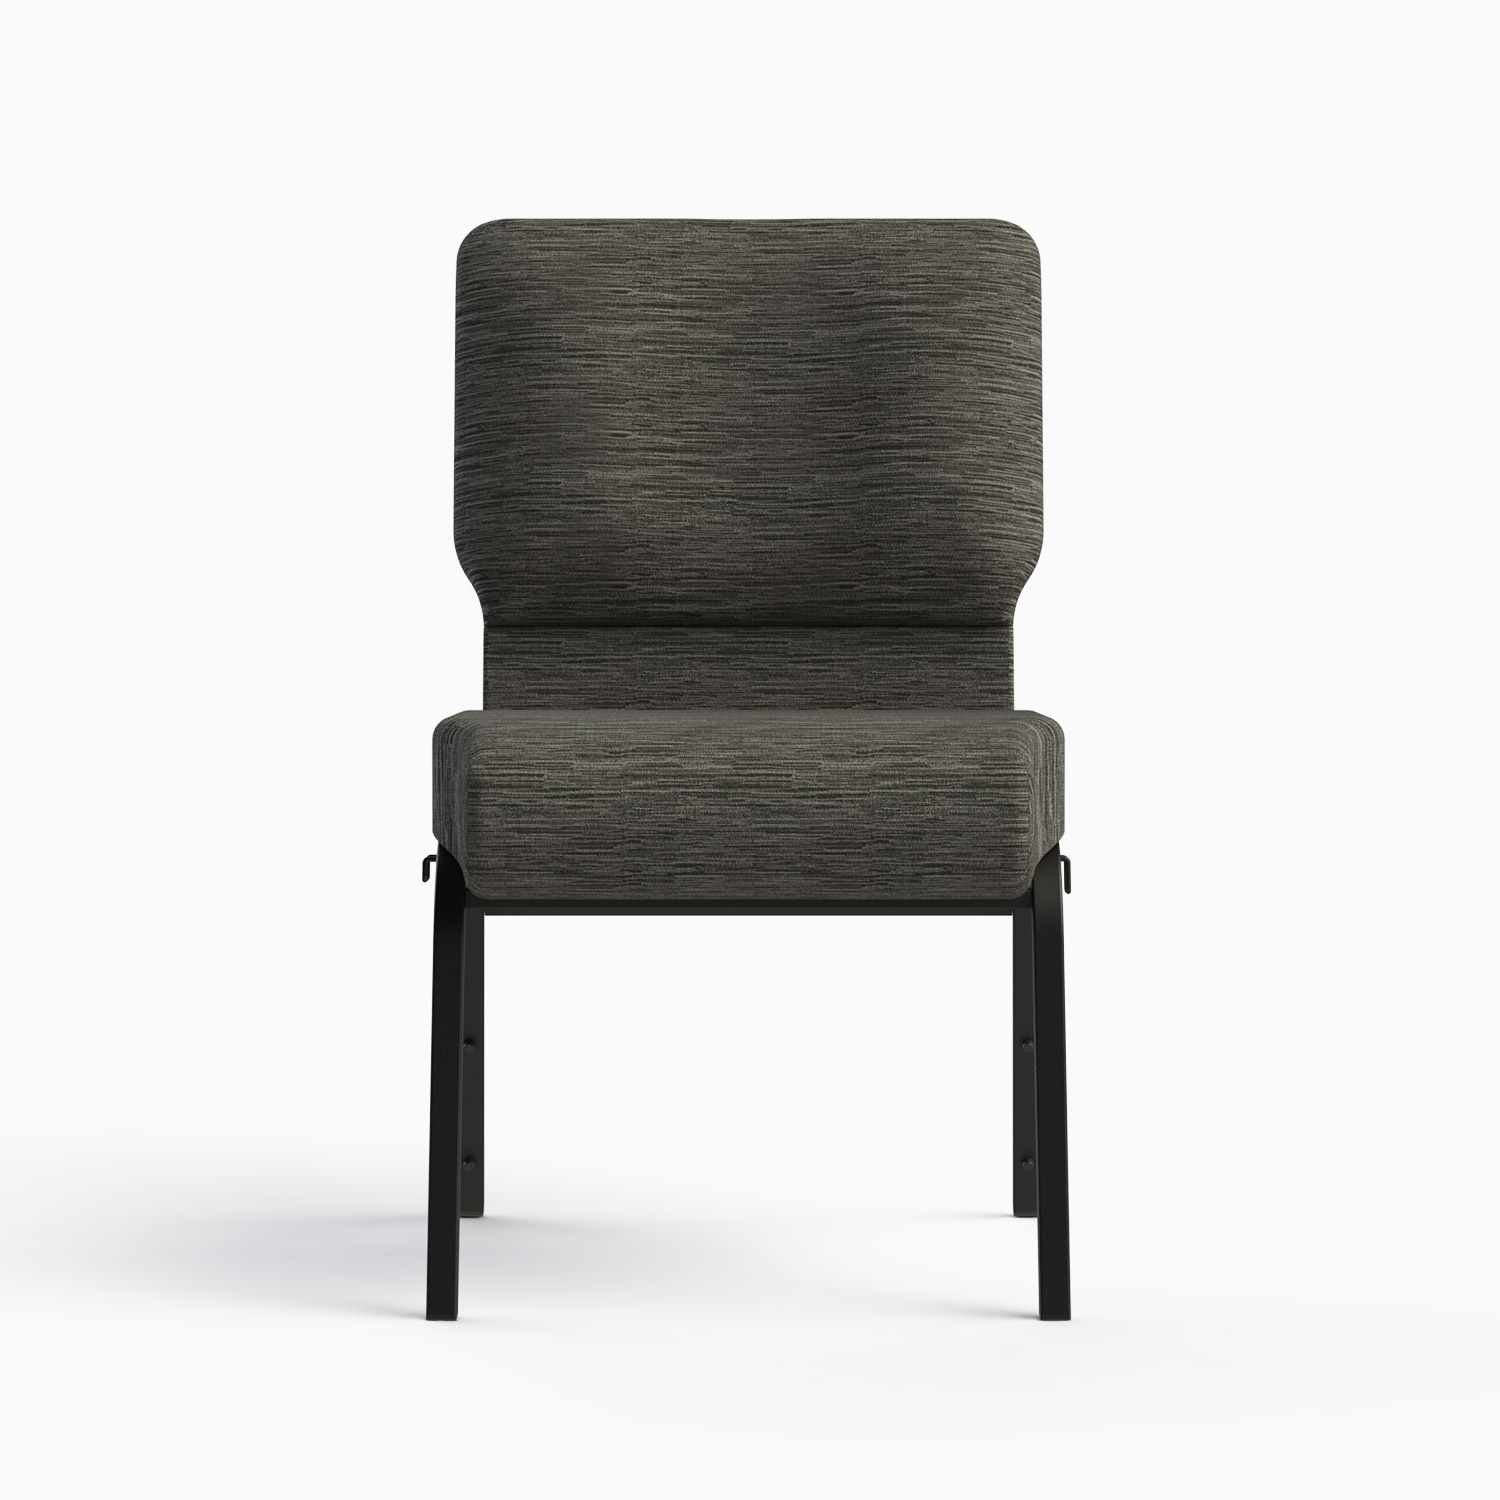 SUMMIT Series 7701-X Designer Series - Church Chairs by ComforTek